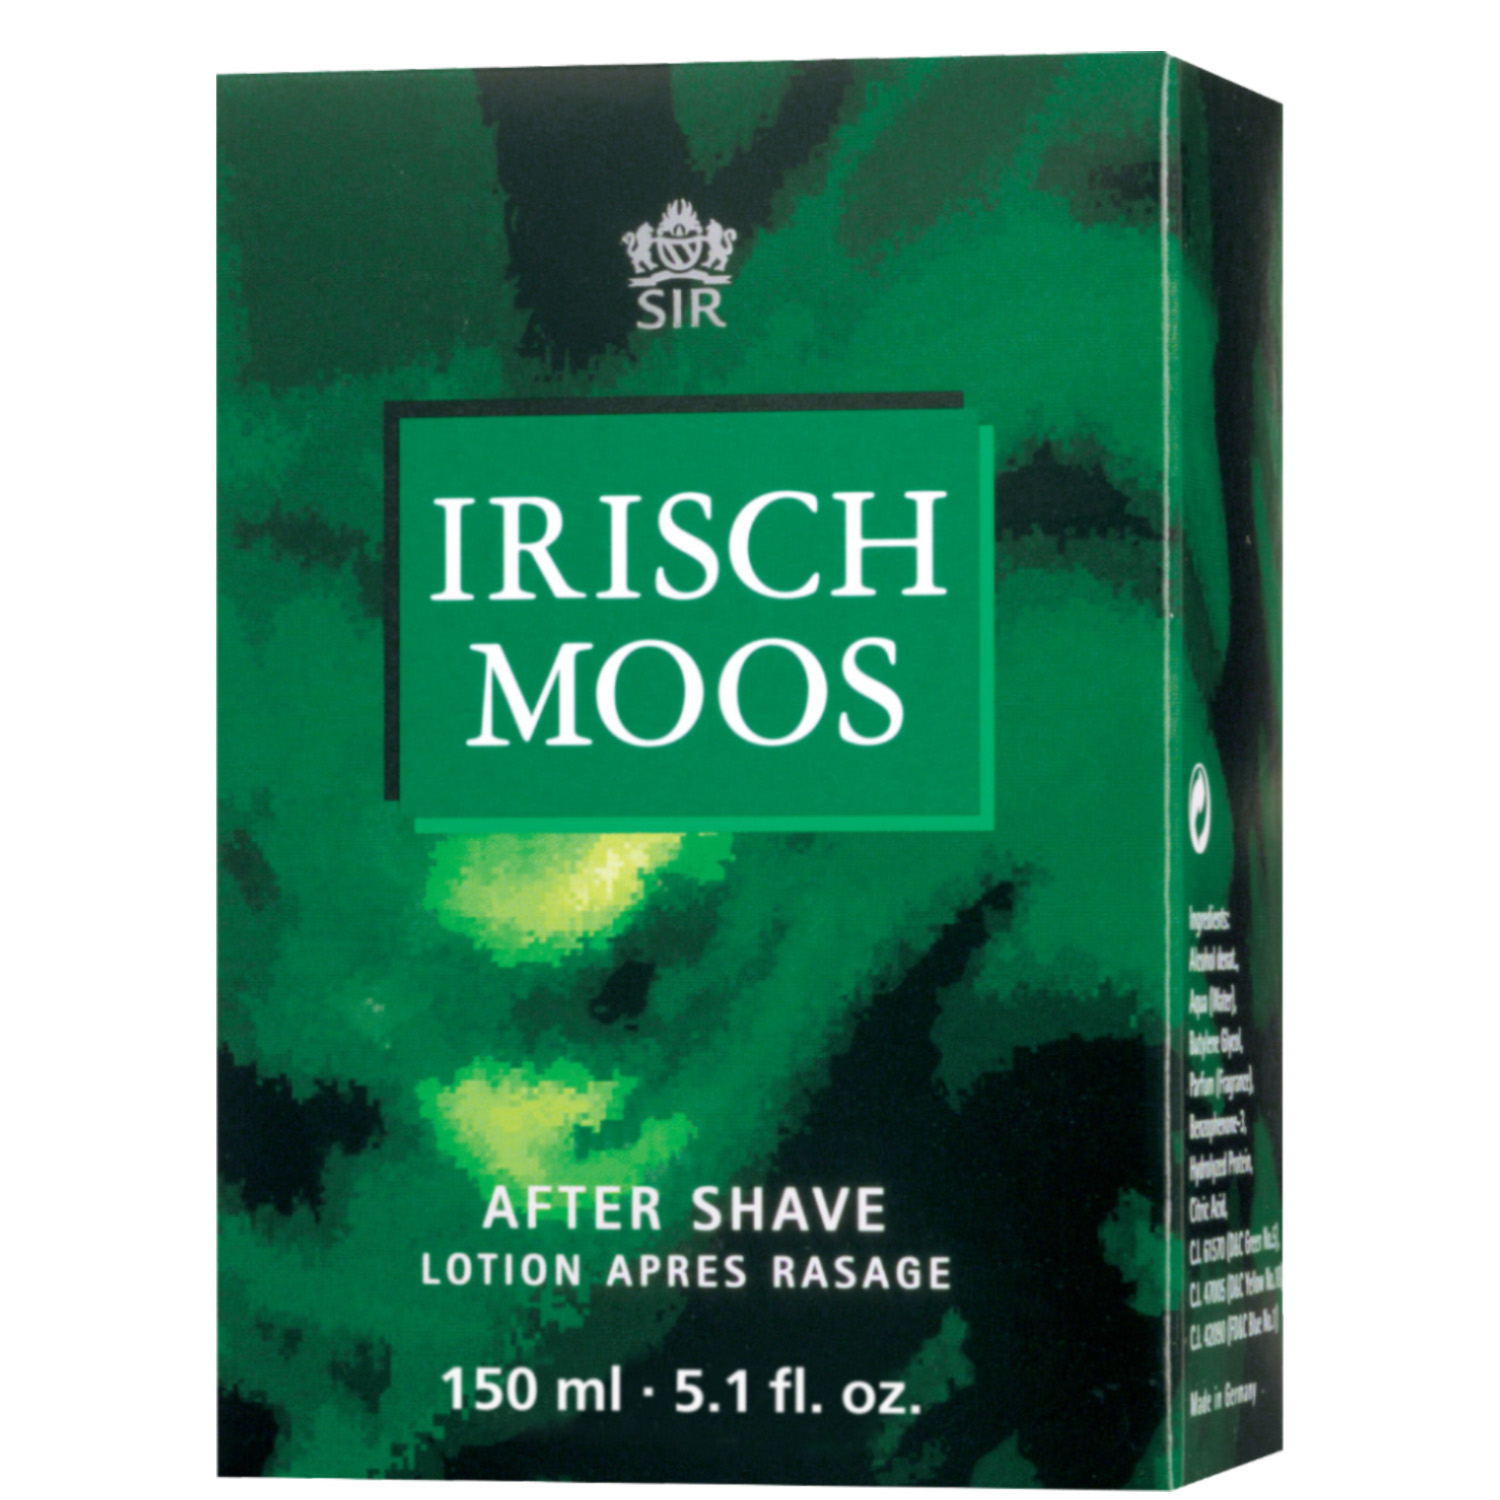 Sir Irisch Moos After Shave 150ml